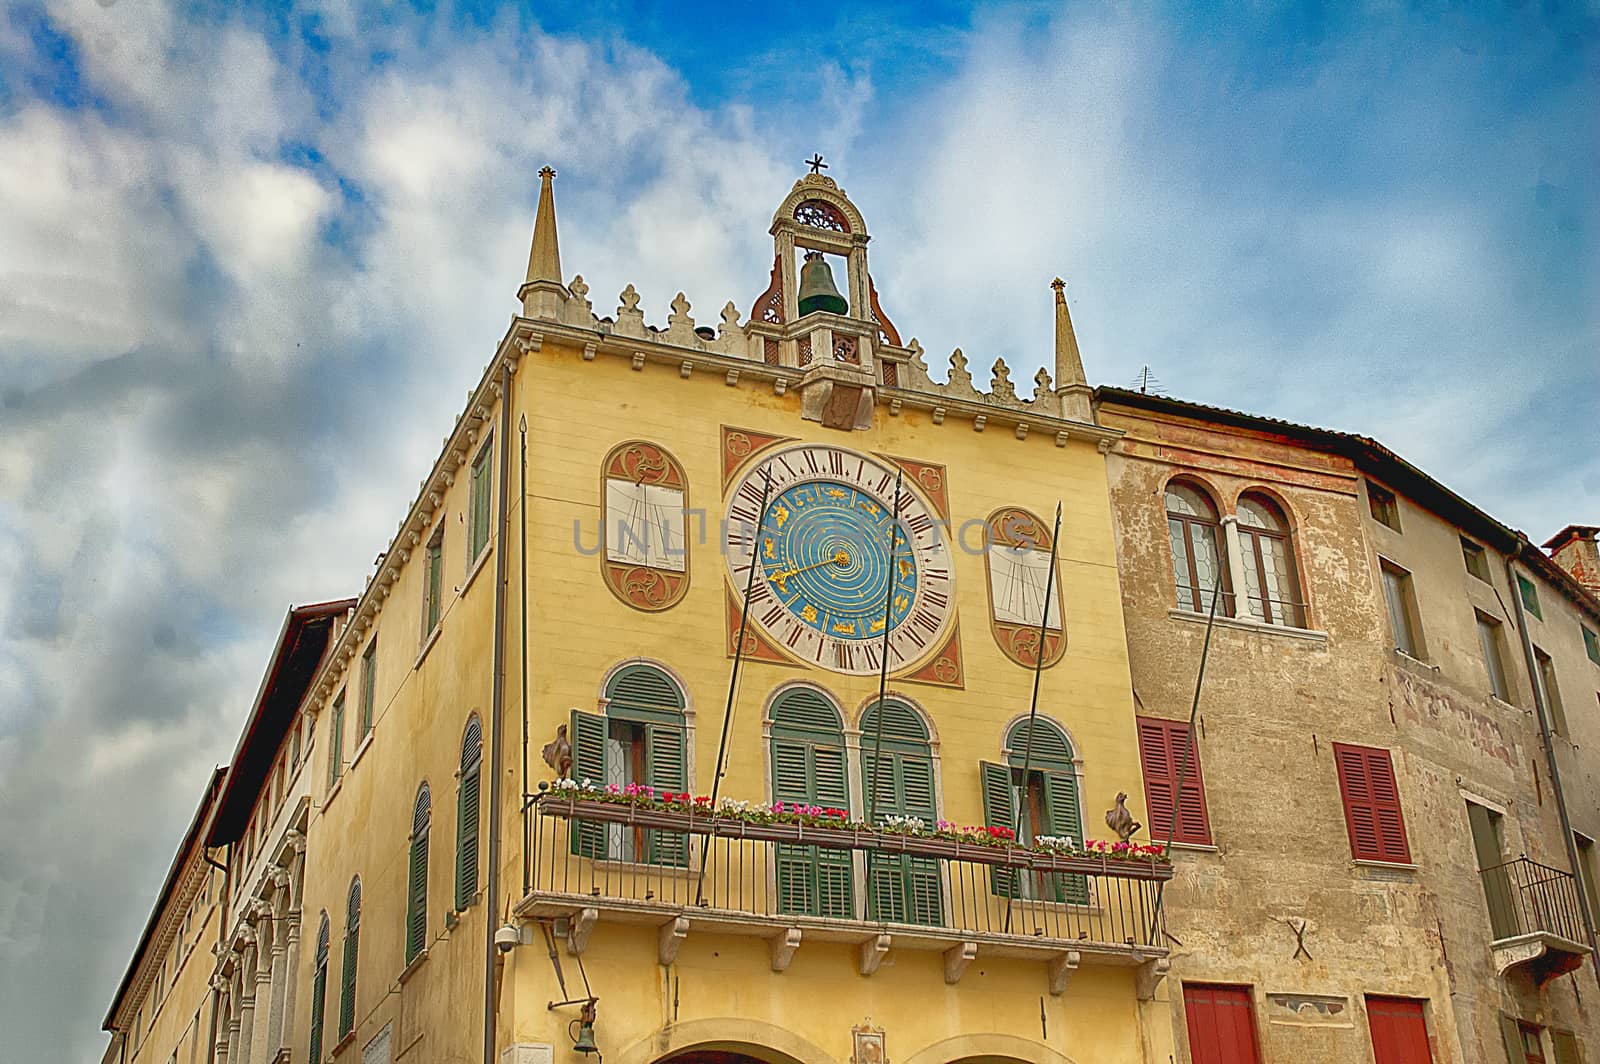 town hall of Bassano del Grappa by carla720